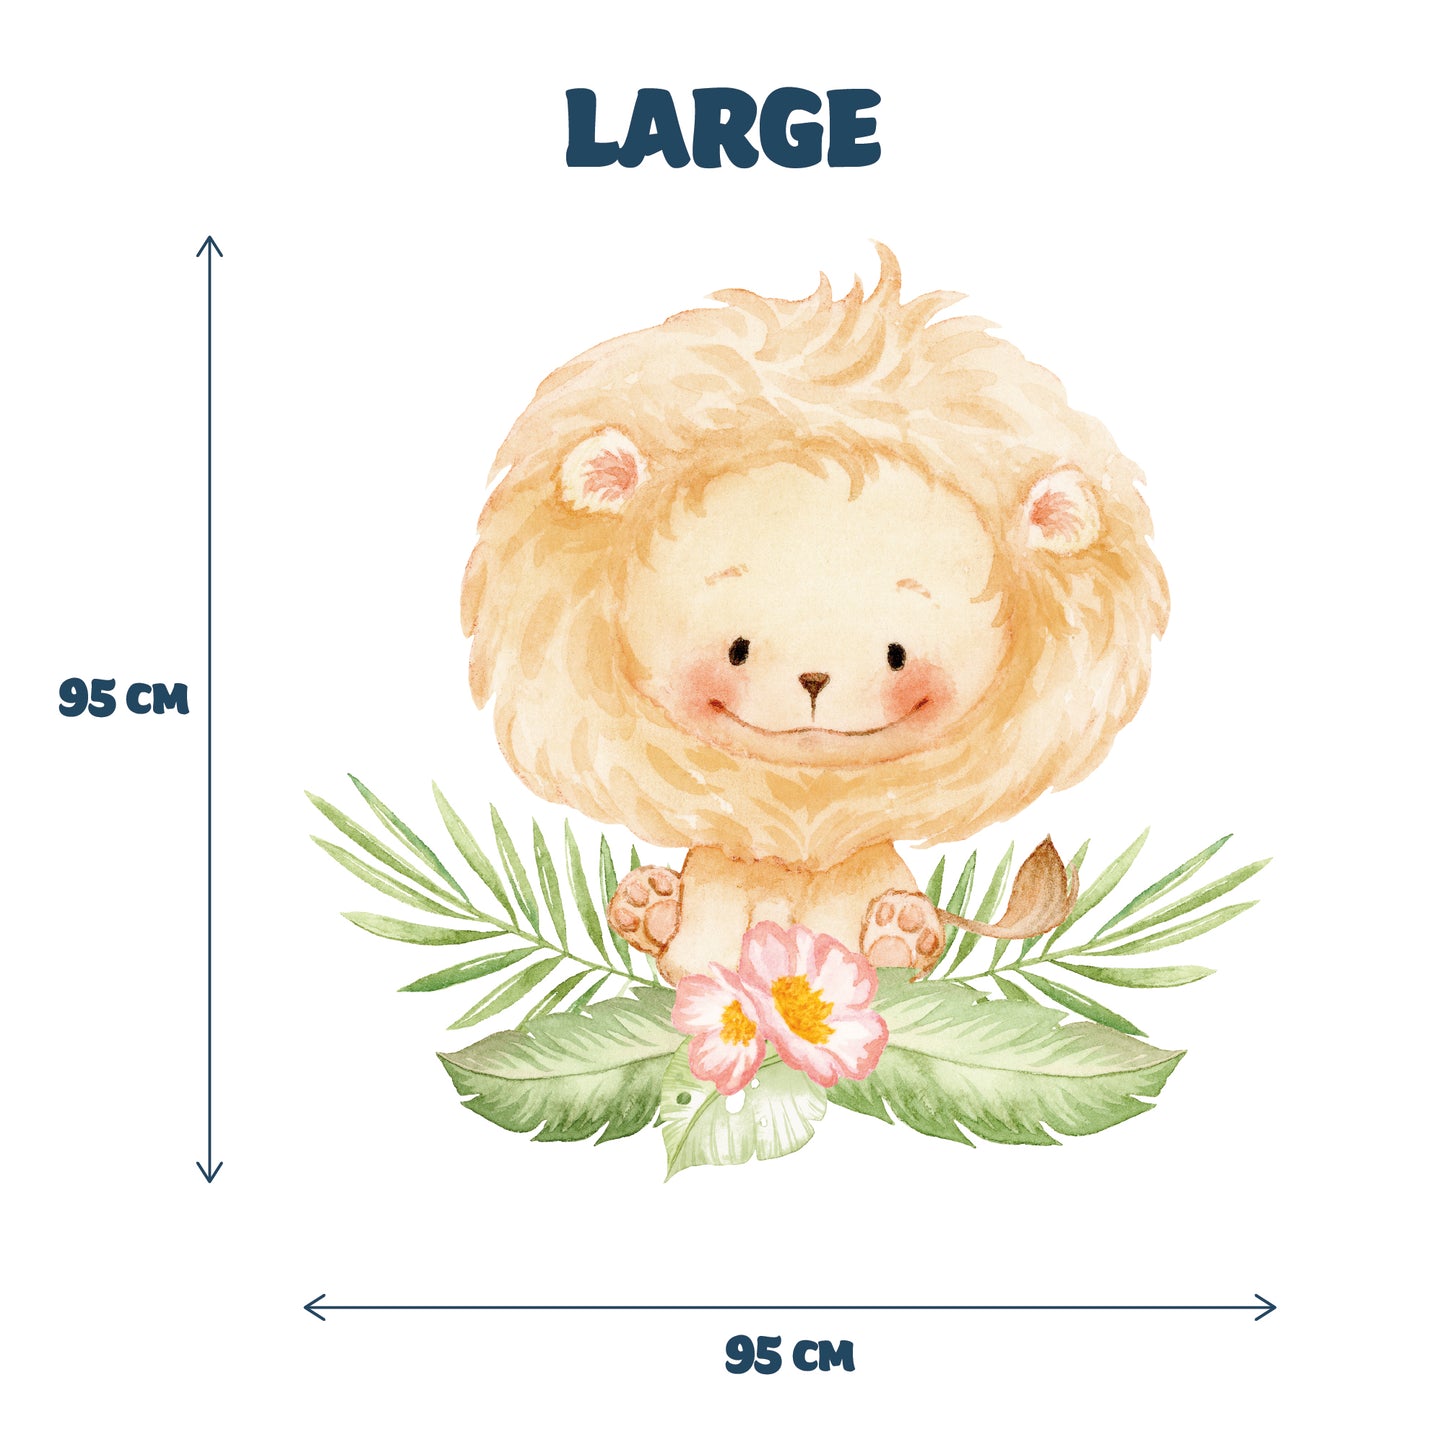 restowrap baby lion nursery wall sticker size guide - large